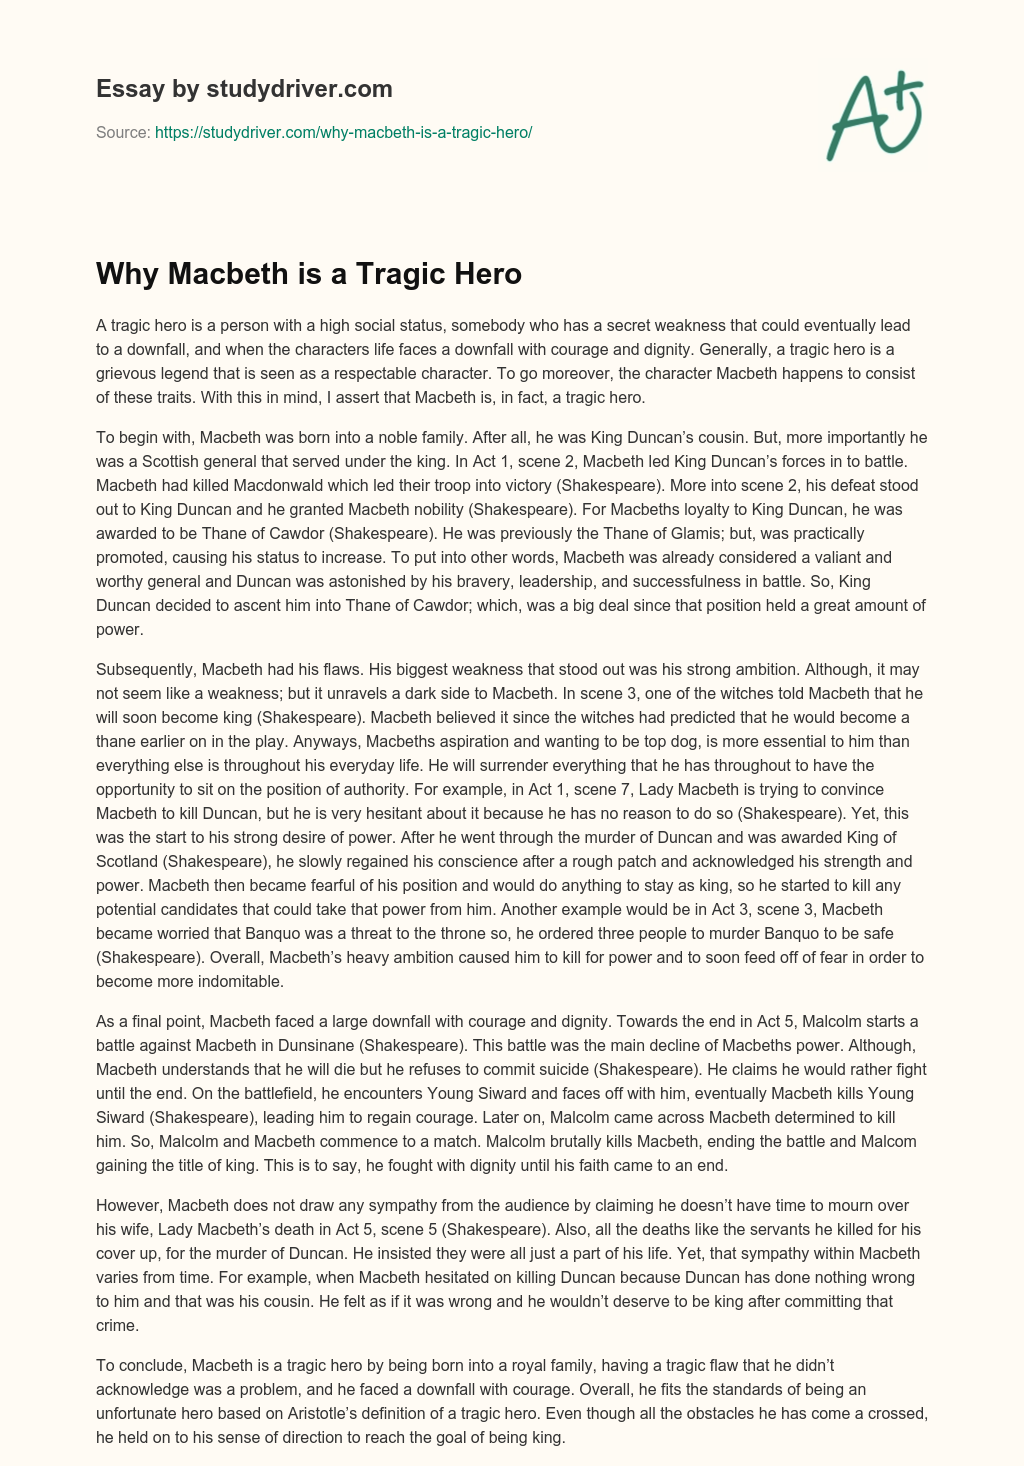 Why Macbeth is a Tragic Hero essay